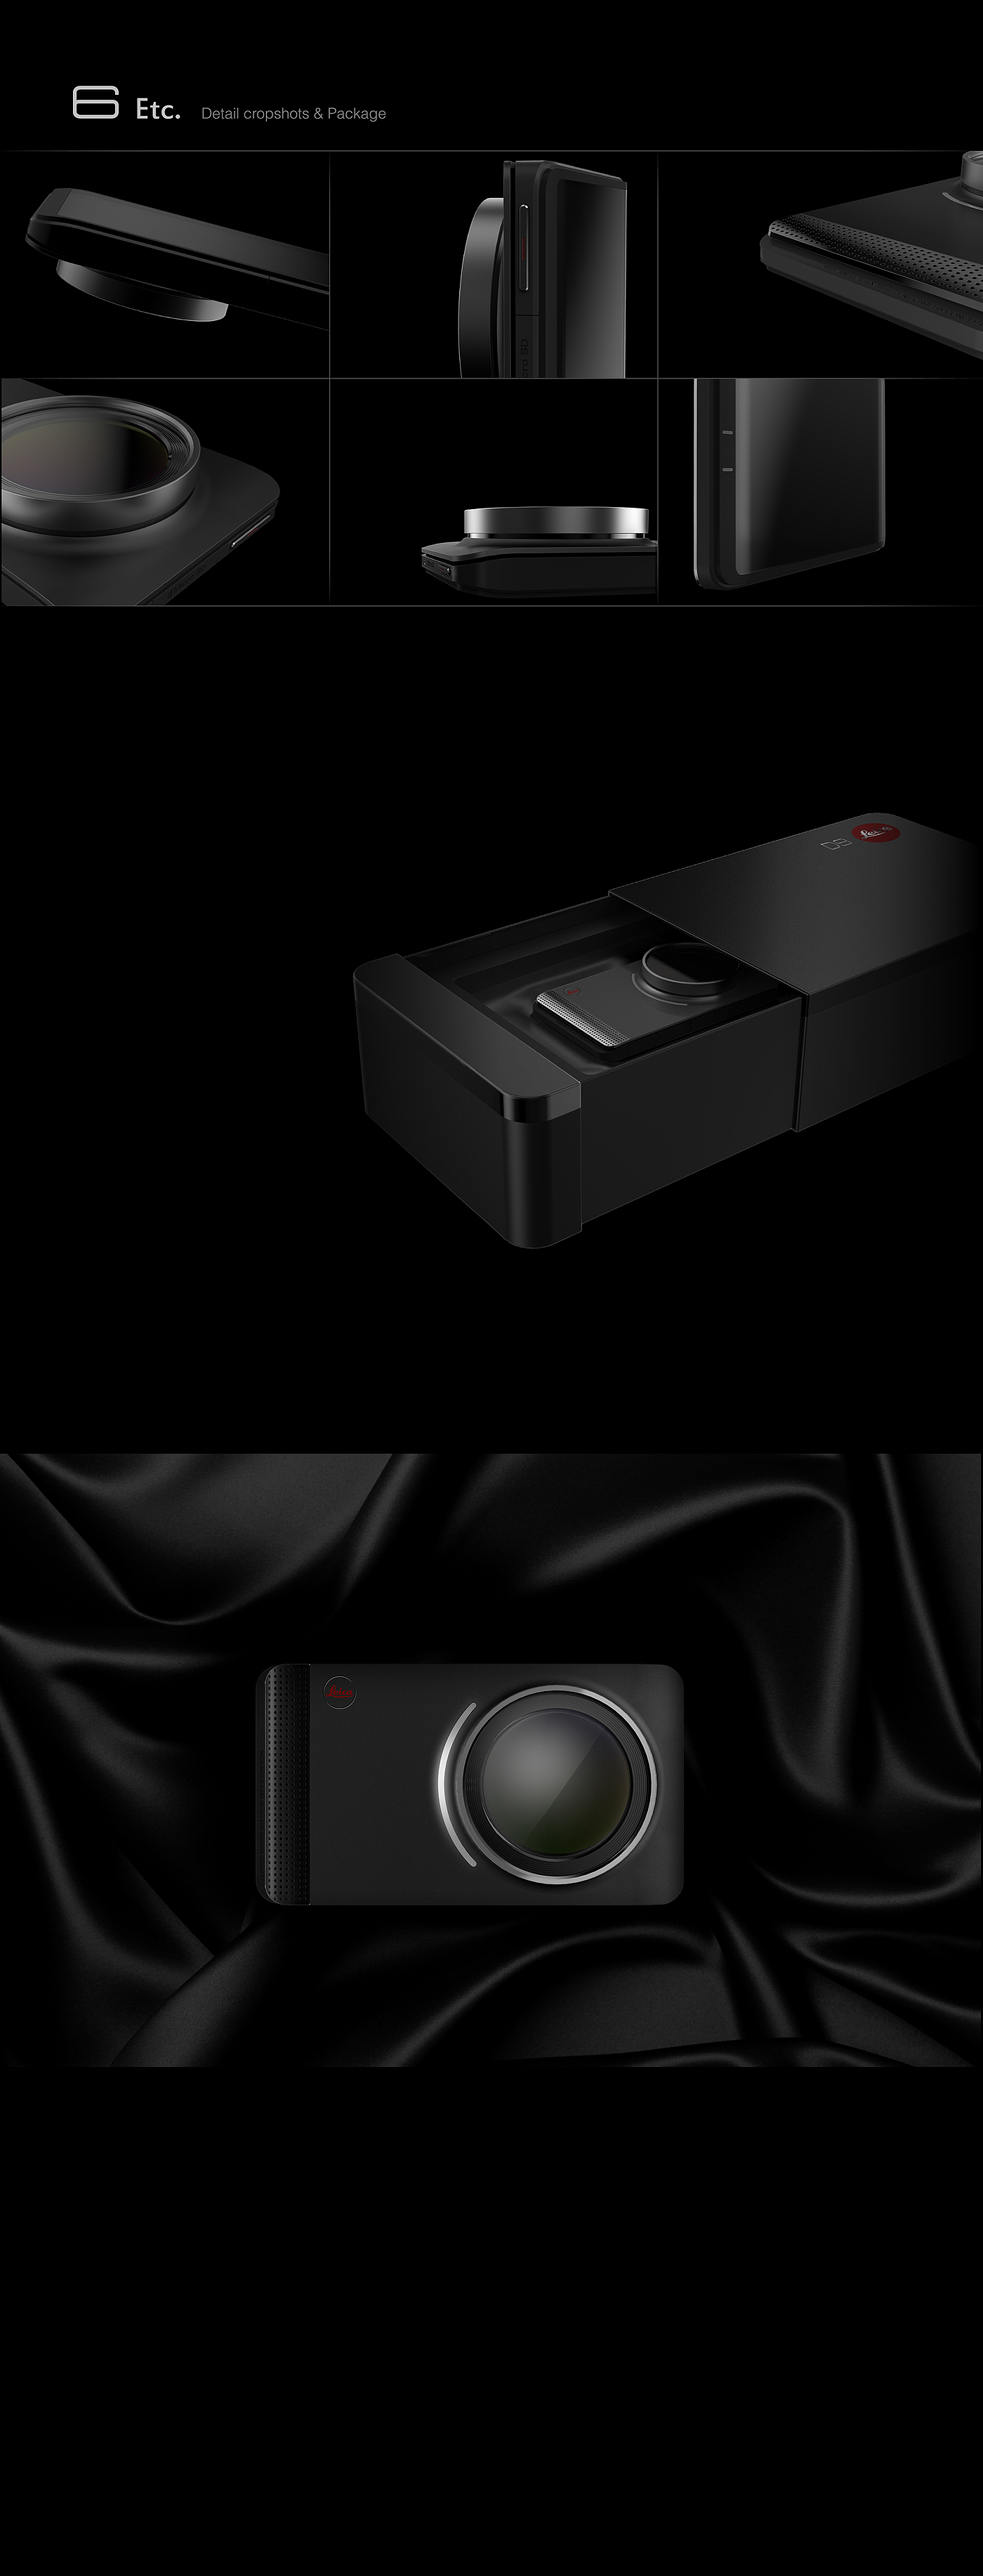 leica，徕卡，相机，紧凑型，建模，渲染，cmf，黑盒子，